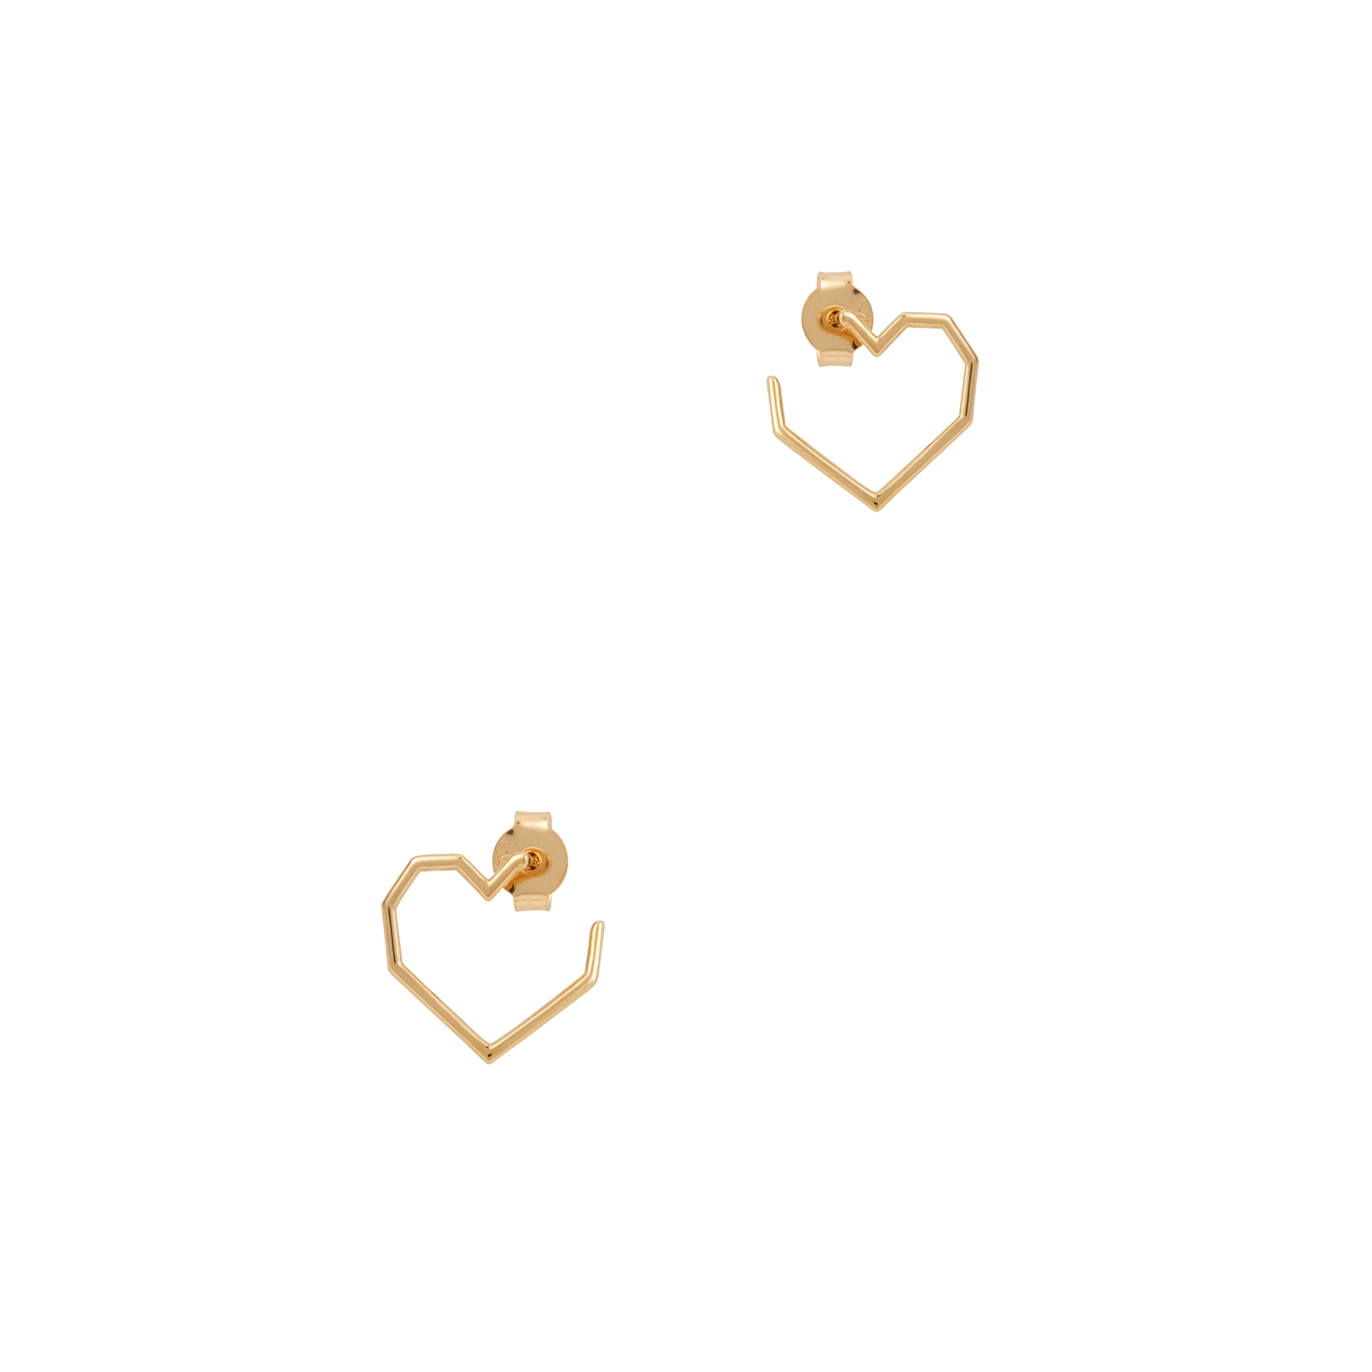 Aliita Corazon Heart 18kt Gold Earrings